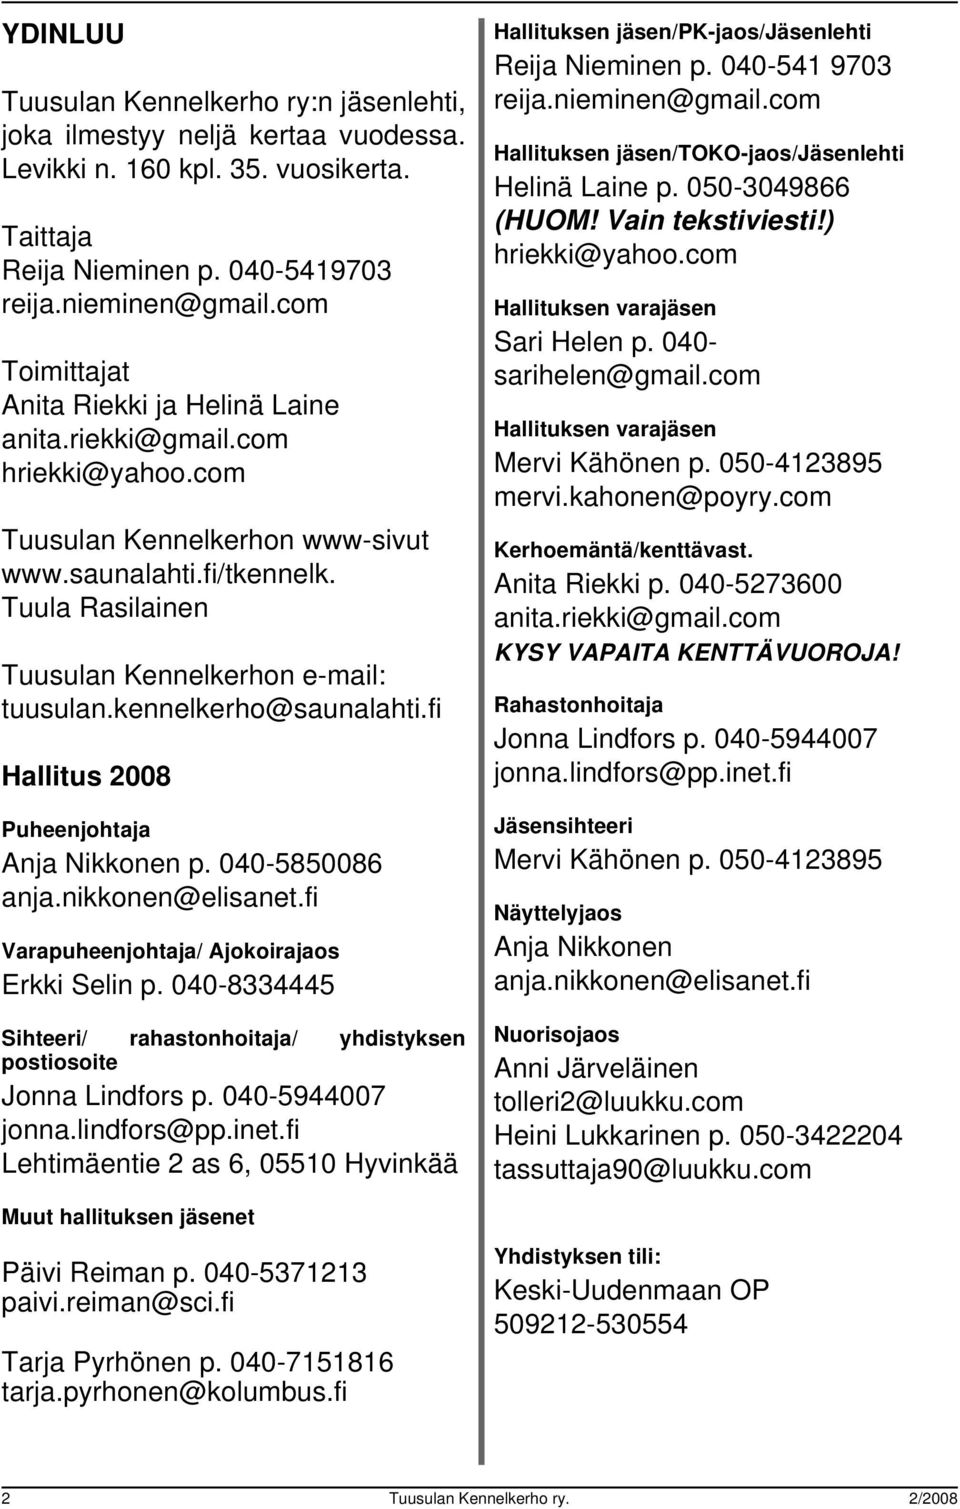 Tuula Rasilainen Tuusulan Kennelkerhon e-mail: tuusulan.kennelkerho@saunalahti.fi Hallitus 2008 Puheenjohtaja Anja Nikkonen p. 040-5850086 anja.nikkonen@elisanet.